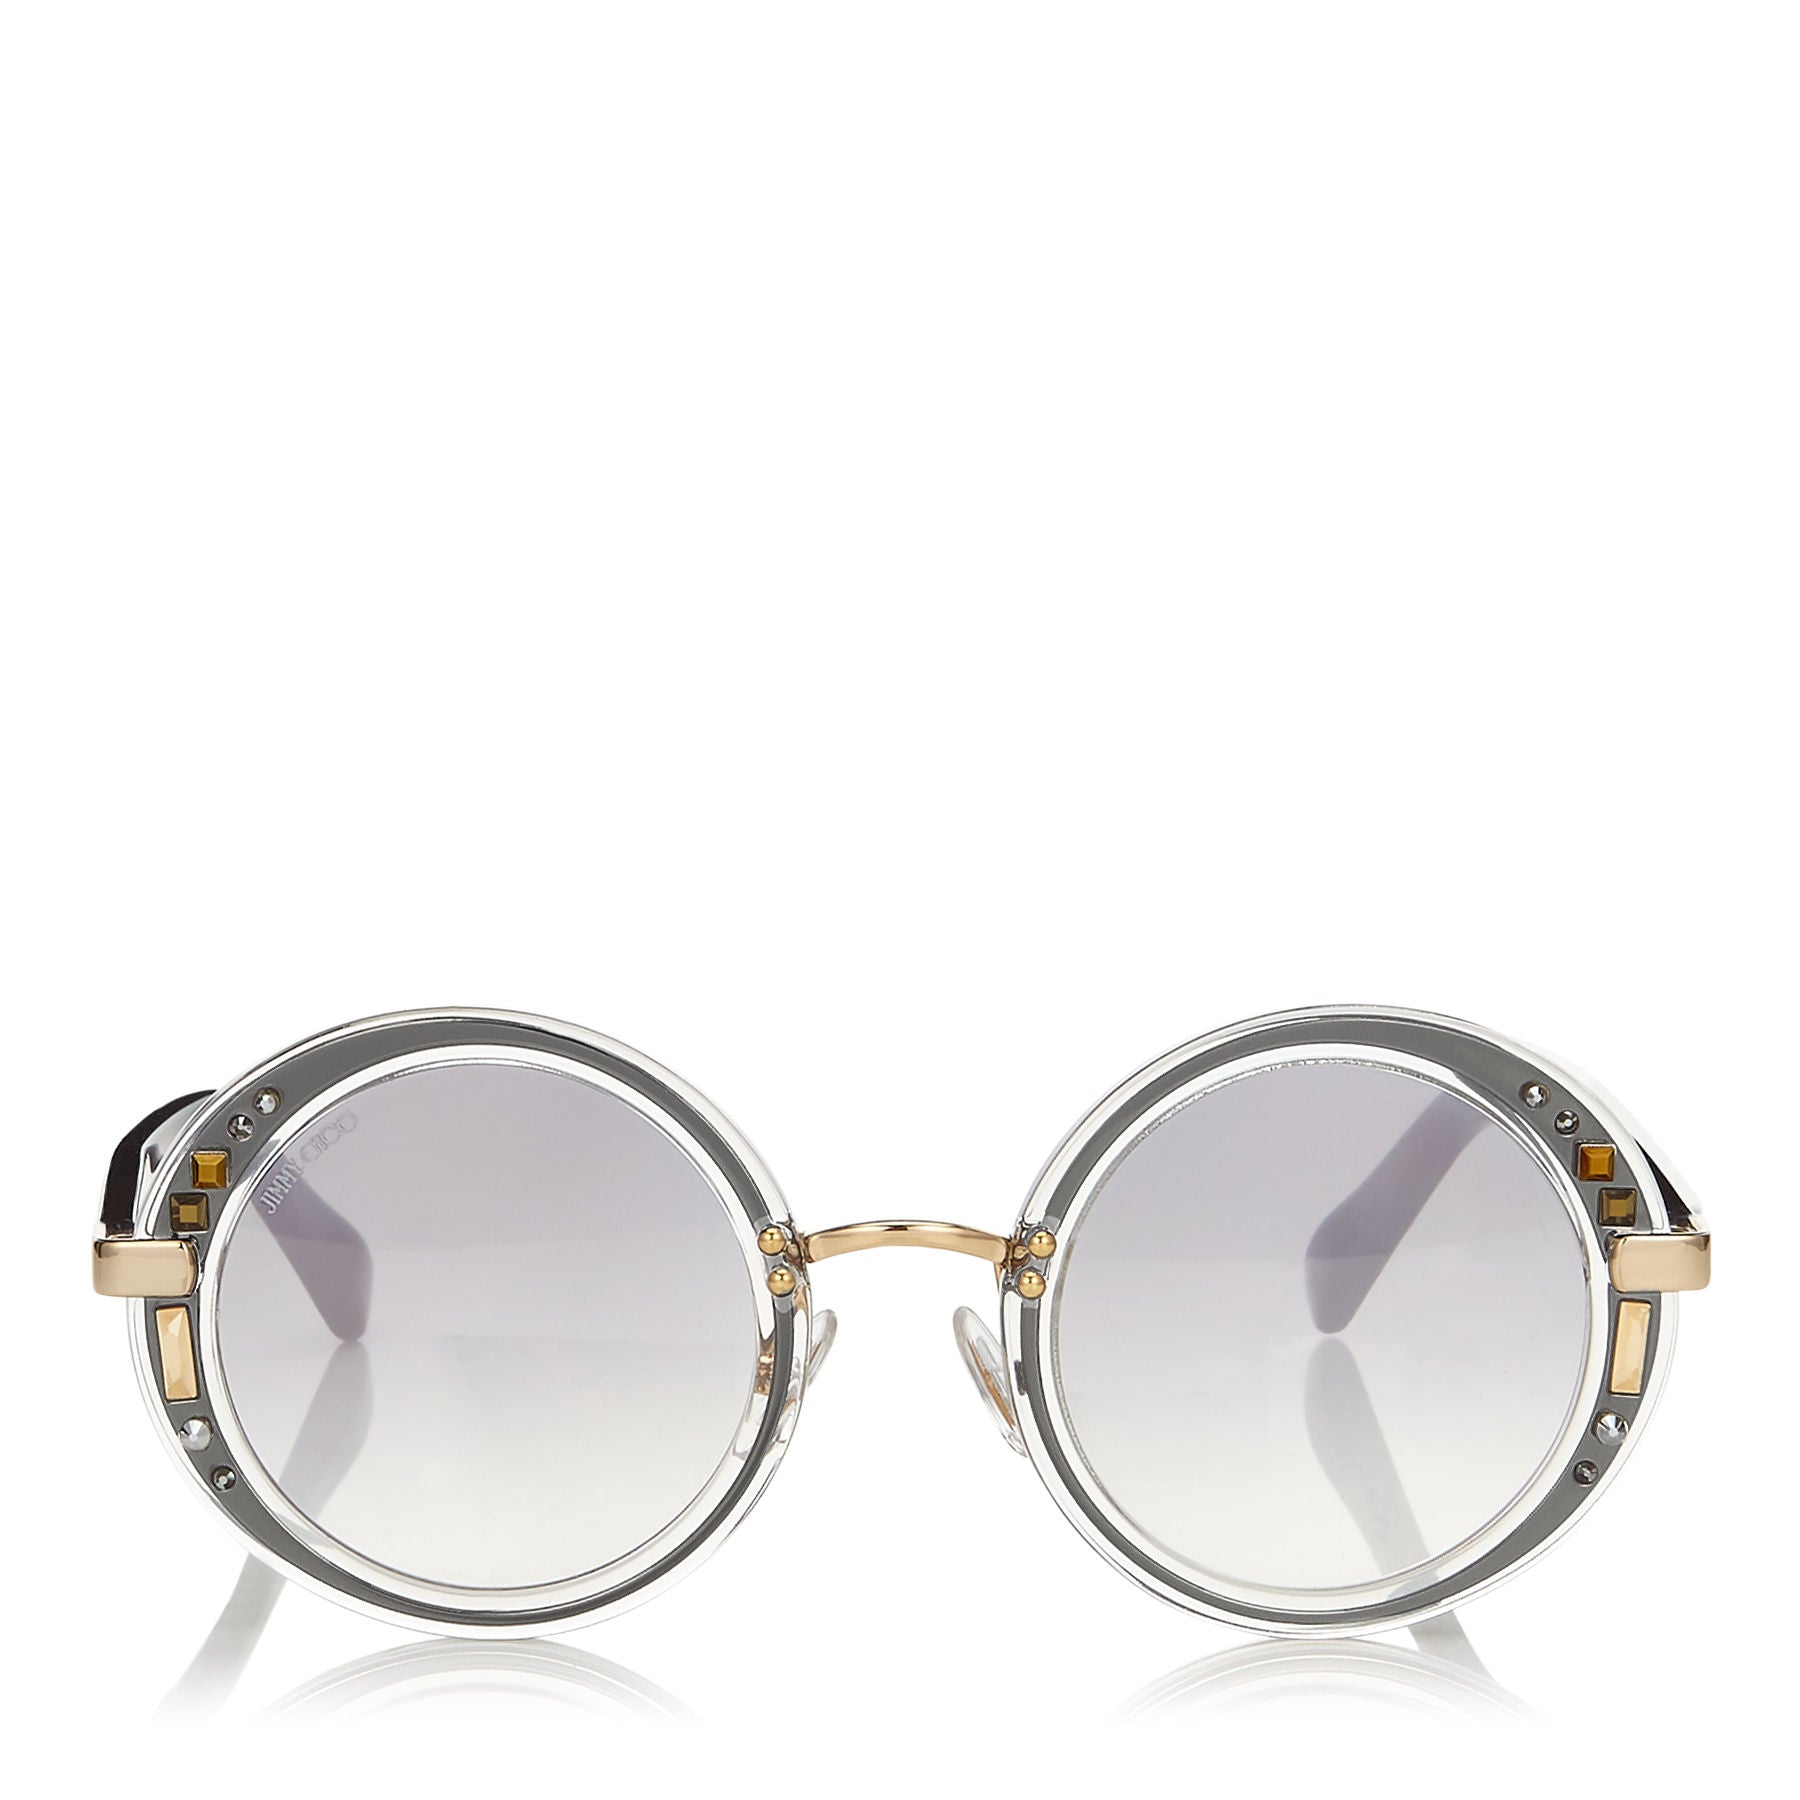 JIMMY CHOO Gem Transparent Round Framed Sunglasses with Swarovski Crystals ITEM NO. GEMS48E16U